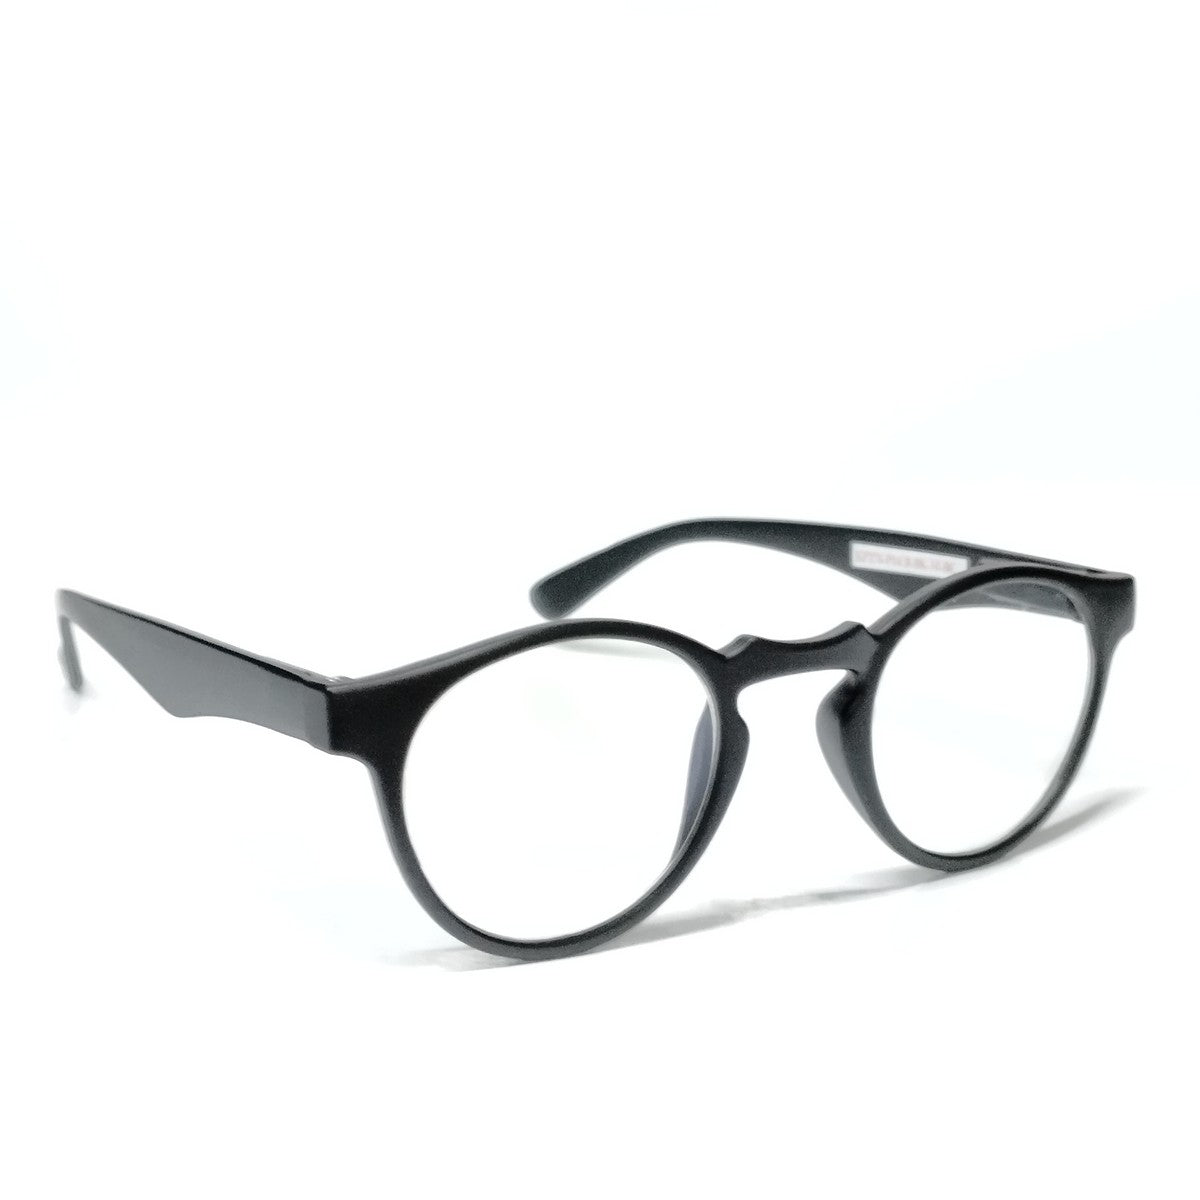 Matt Black Round Progressive Glasses  for Computers Multifocal Reading Glasses for Men Women